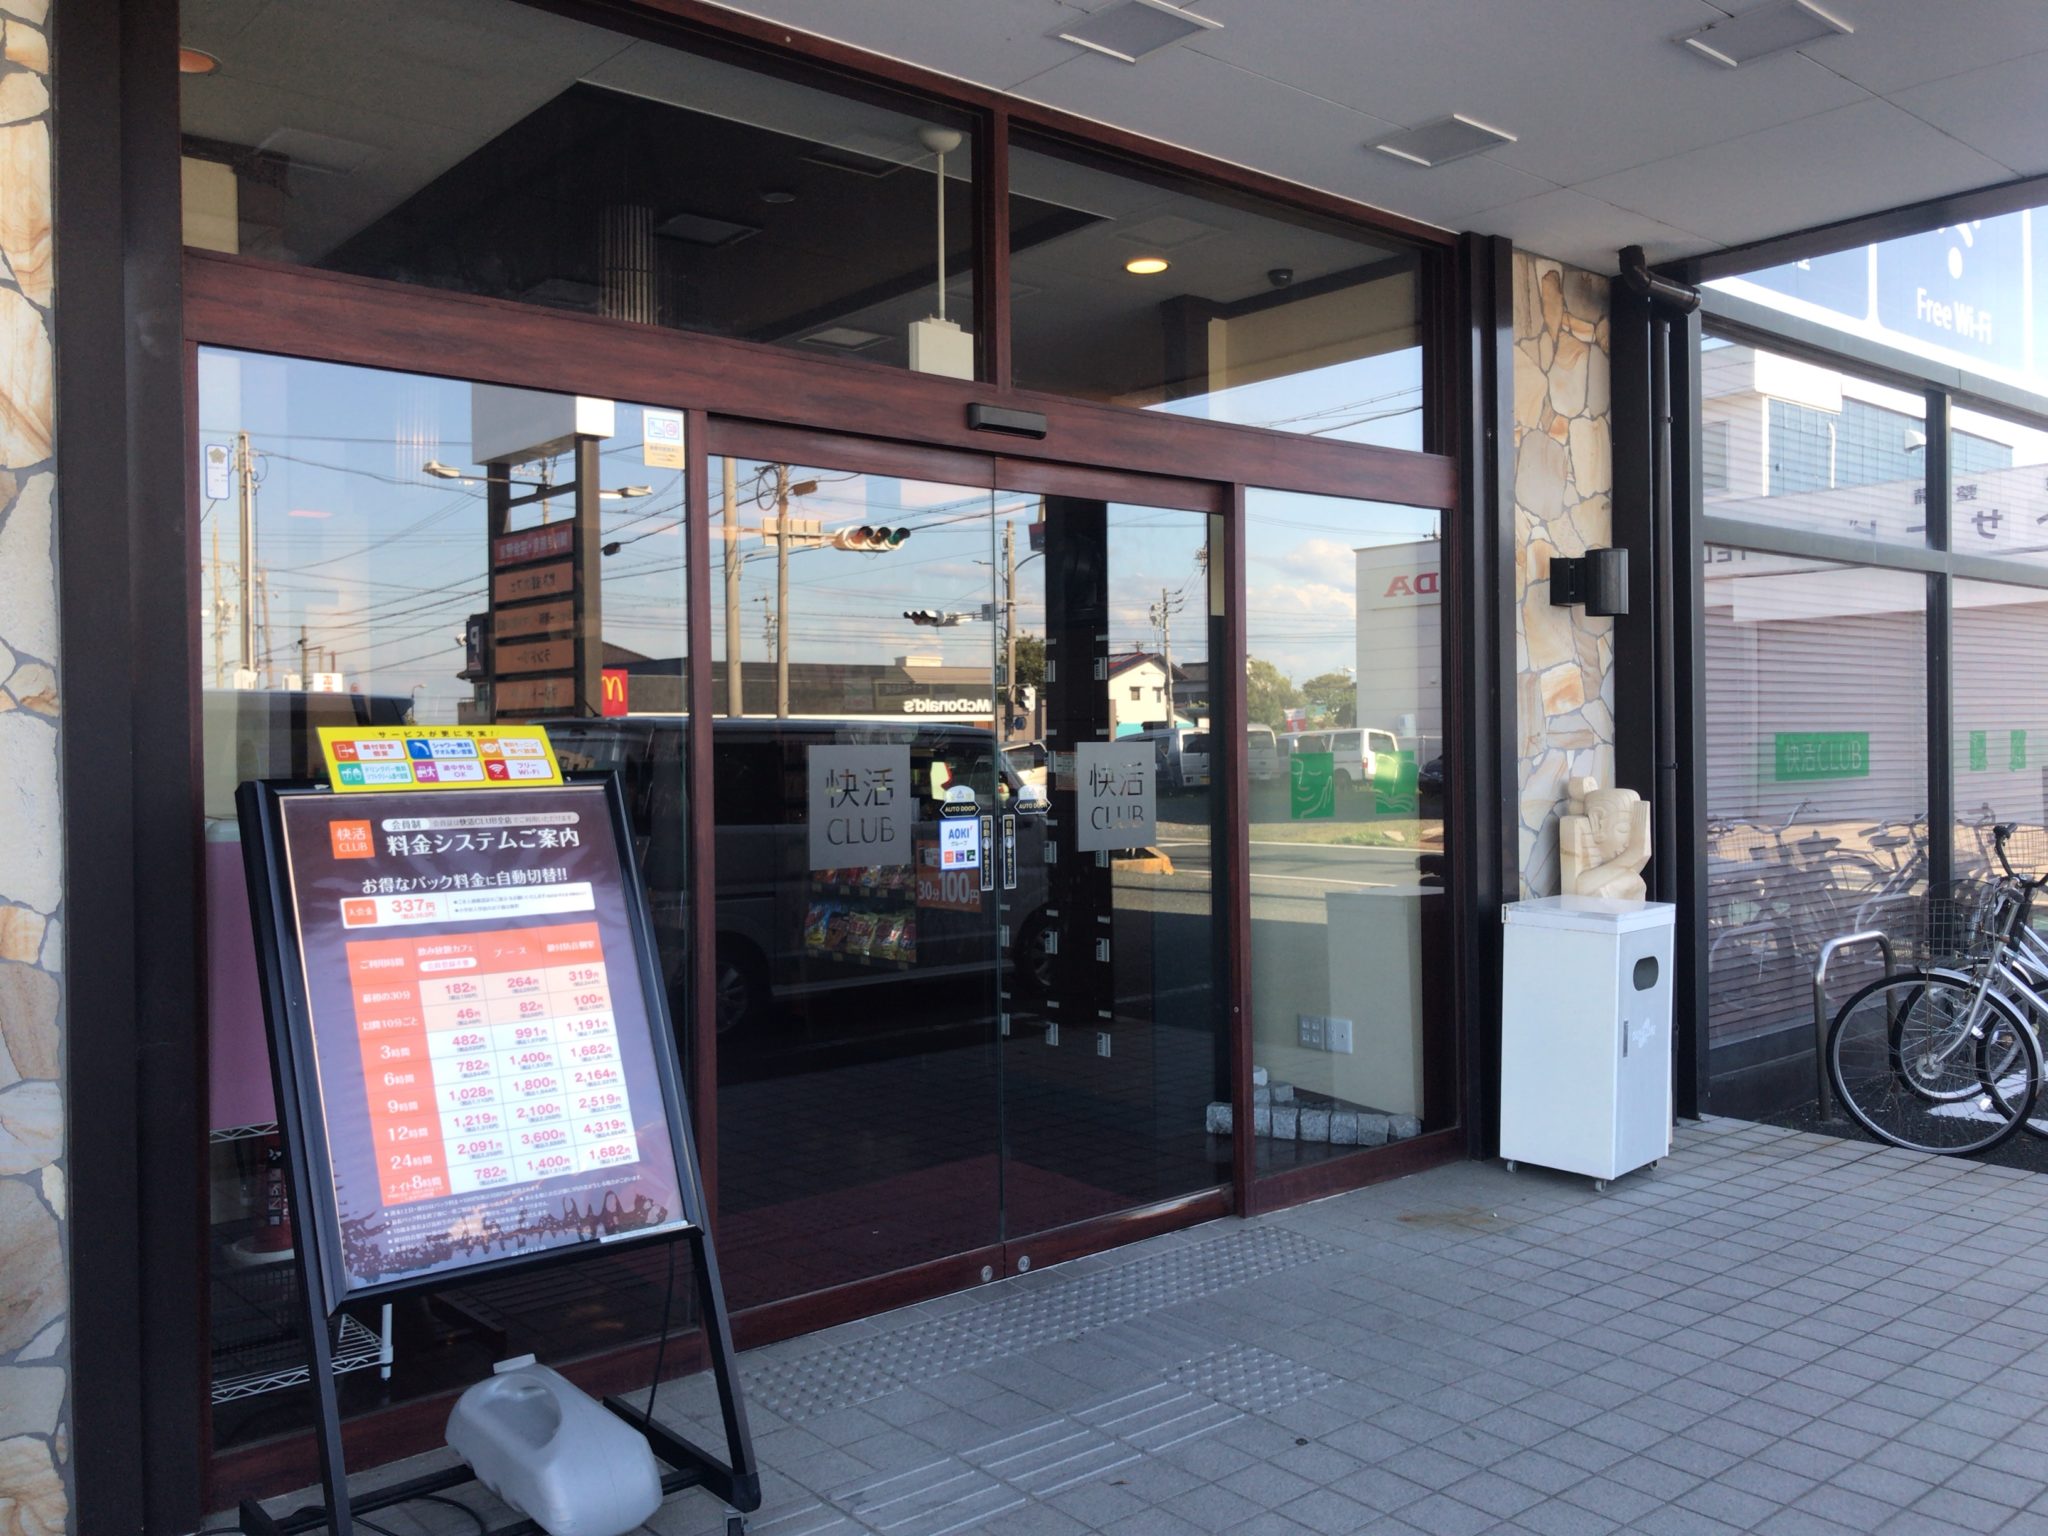 浜松駅から車で12分 快活クラブ 浜松都盛店をレポート ヒマップ